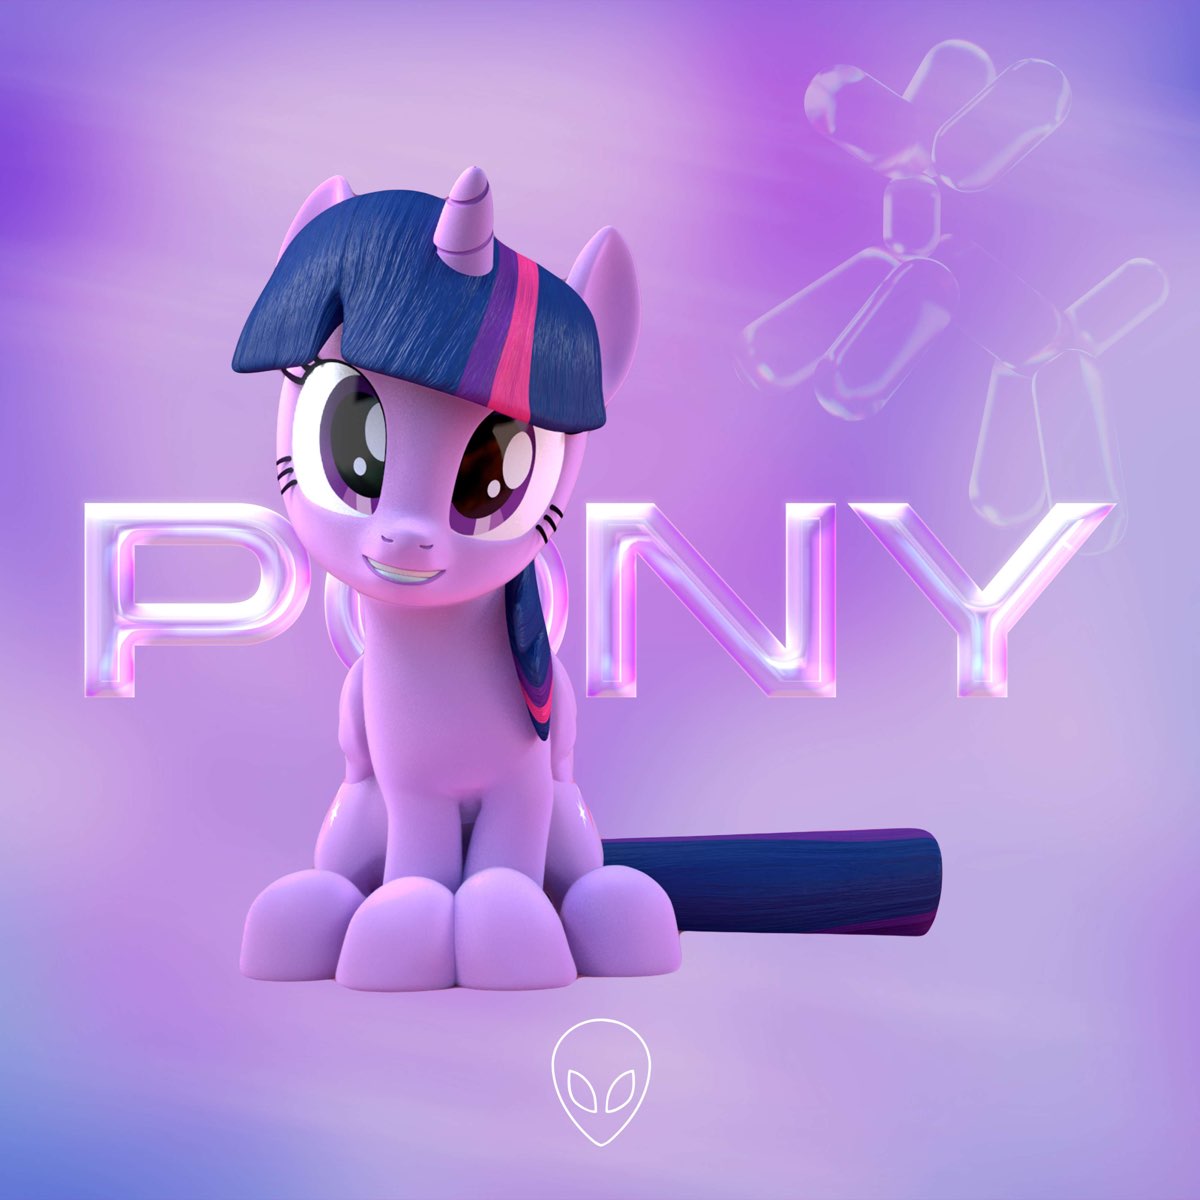 Pony слушать. Маленькая пони - Single. Пони слушает музыку. Обложка для альбома с пони. Альбом пони.